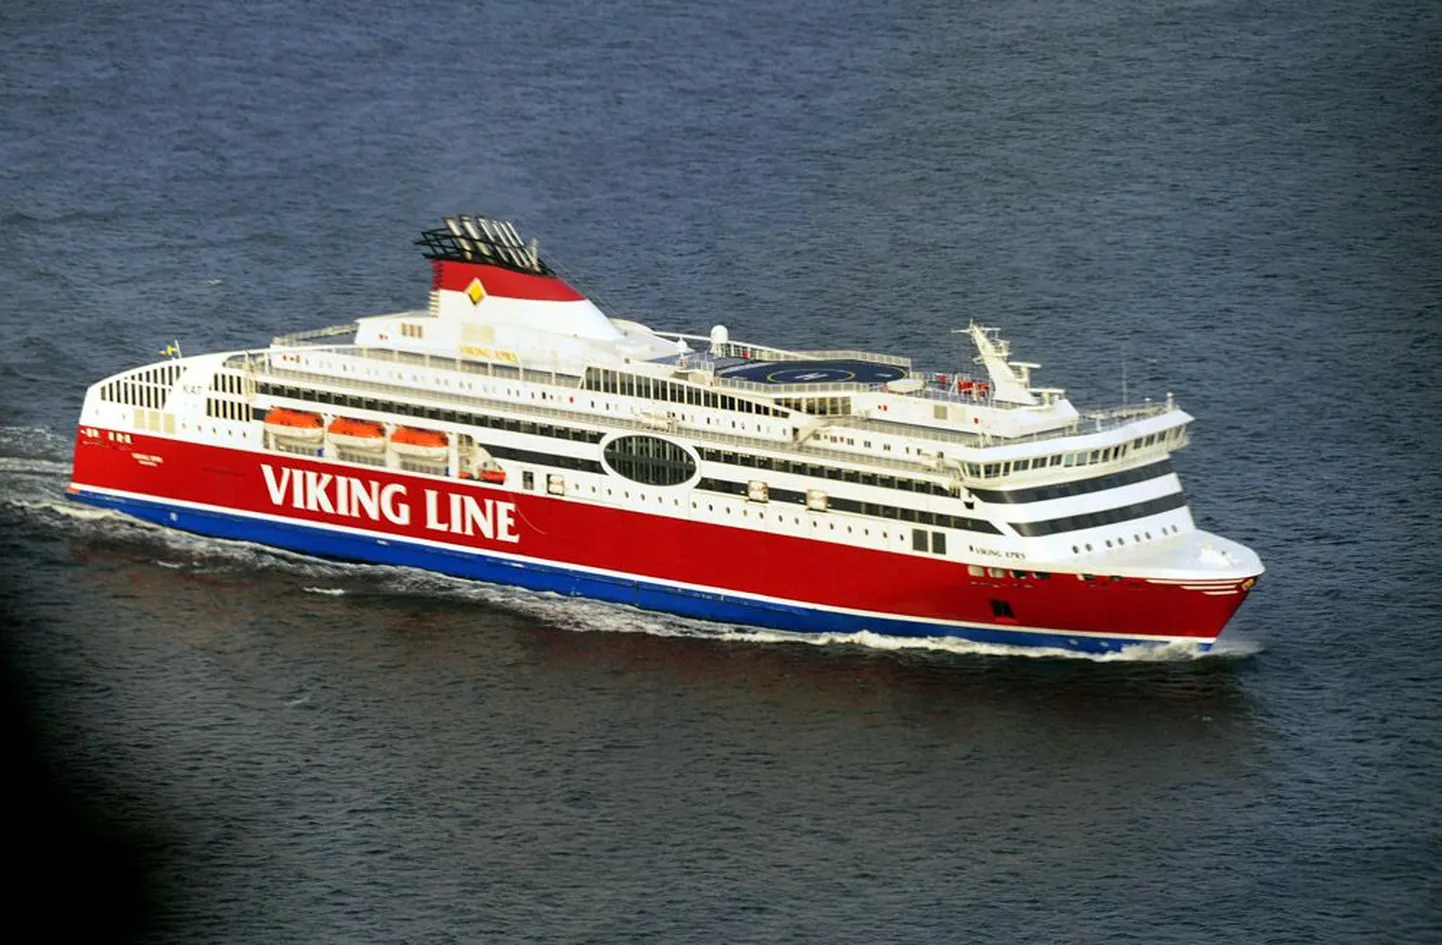 Viking Line’i laeval XPRS võib juhtuda, et telefon valib satelliitvõrgu. Siis tuleb näiteks EMT kliendil vastu võetud kõne iga minuti eest maksta üle 75 krooni.